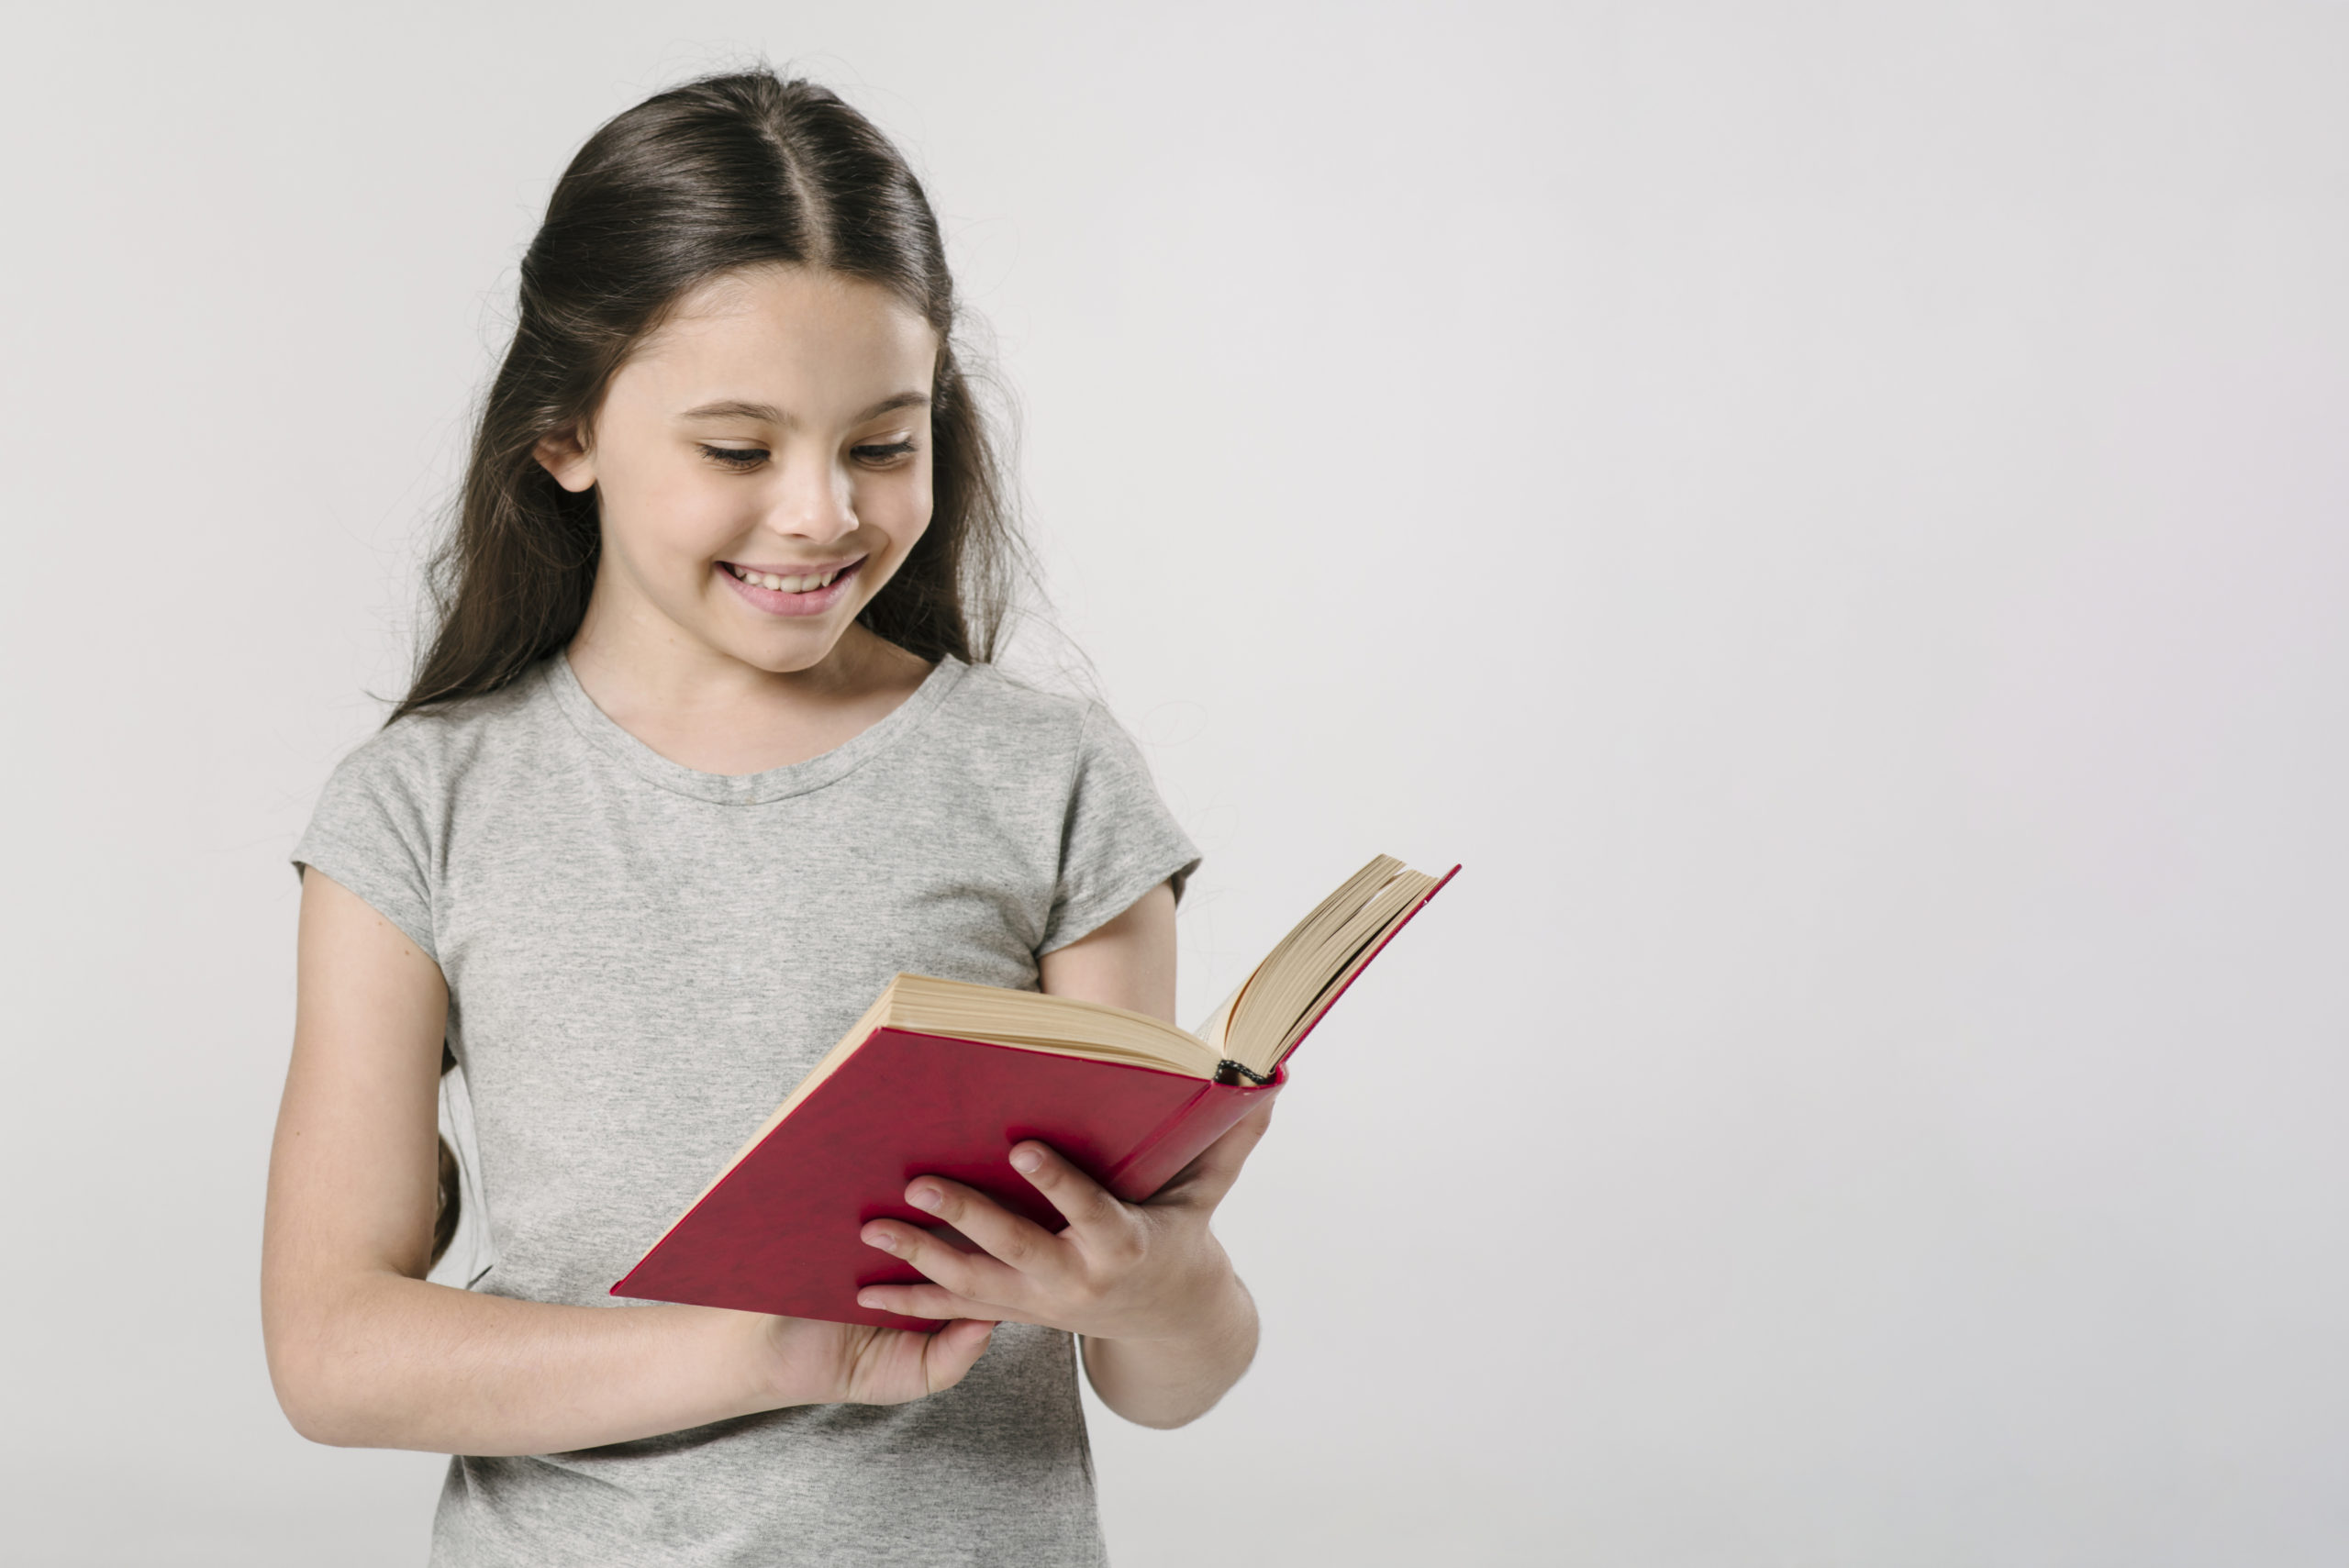 Прочесть вслух pdf. Ребенок с книгой в руках. Книги для детей. Книжки руками детей. Девочка читает книгу.